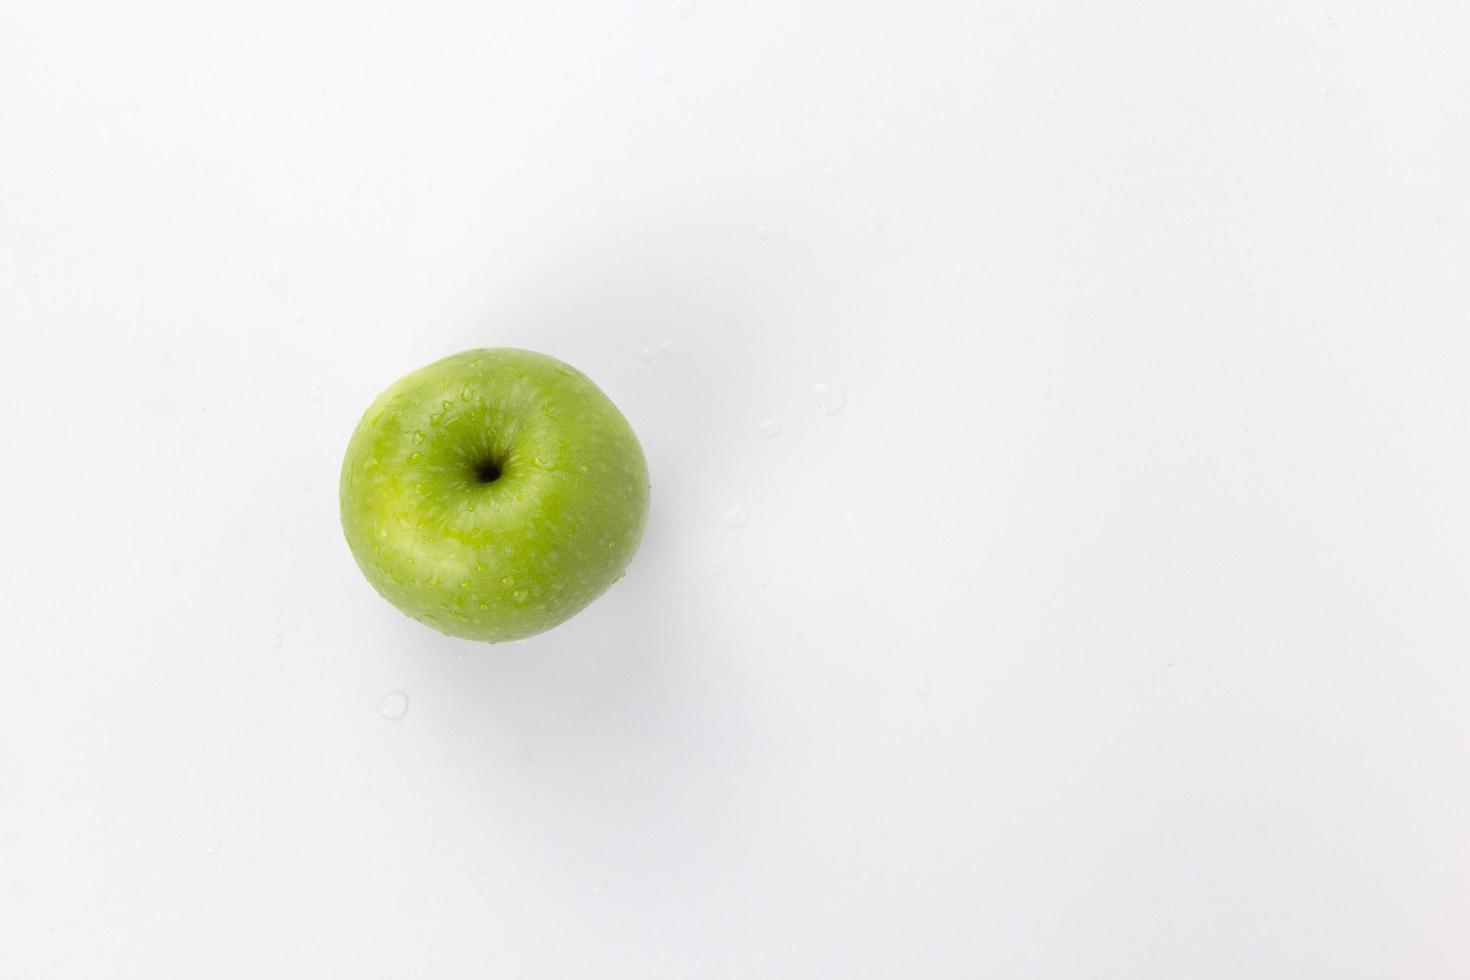 um isolado de maçãs verdes maduras frescas no fundo branco, maçã saudável para cozinhar foto